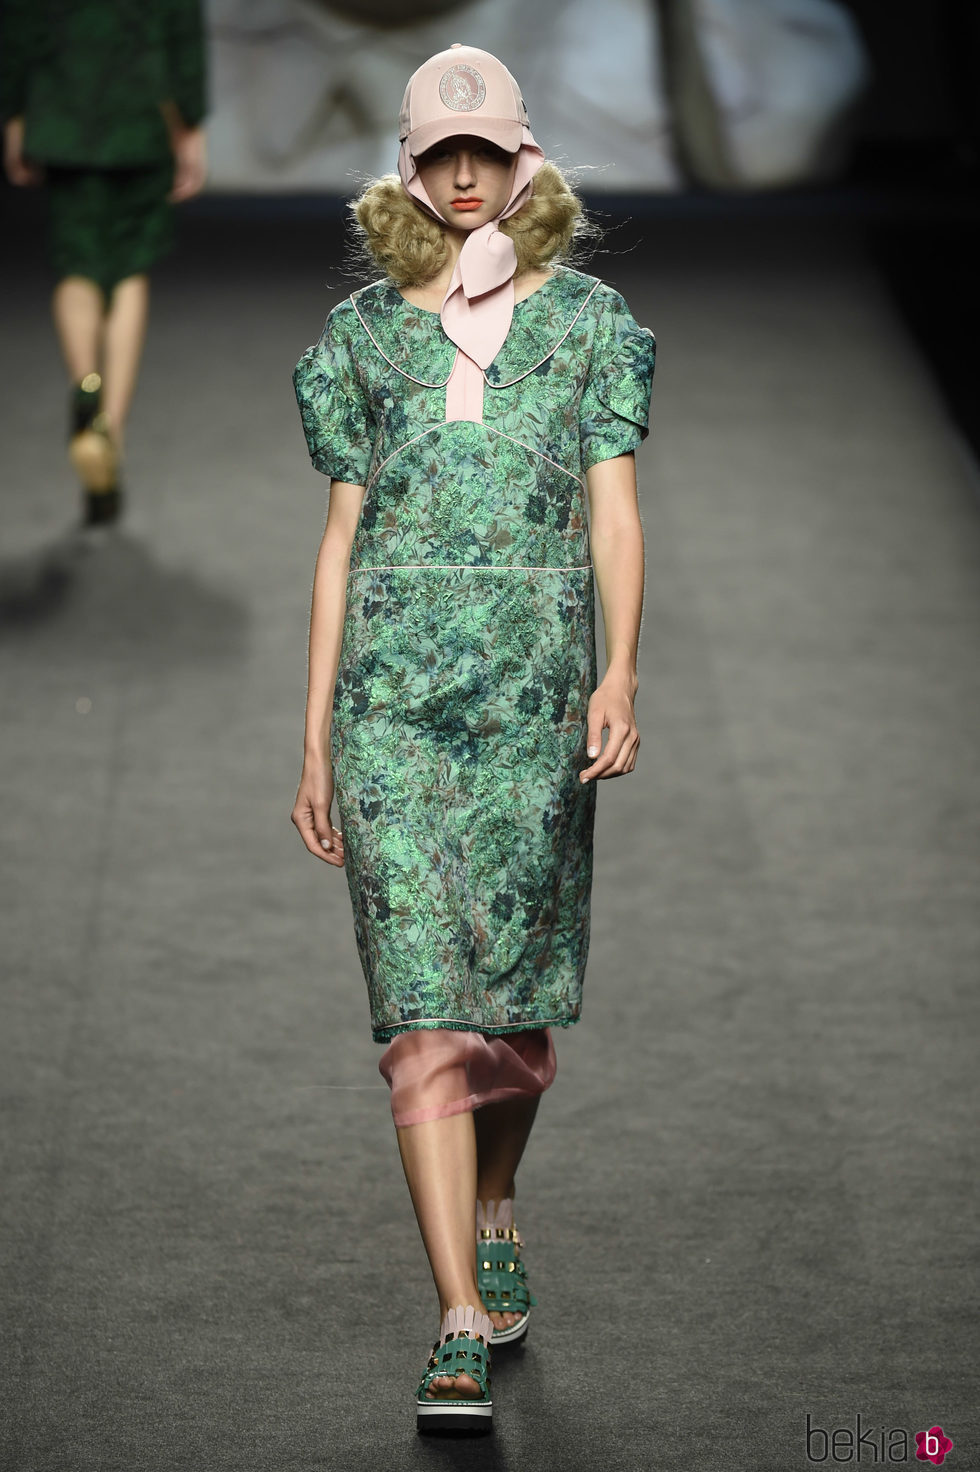 Vestido verde estampado de Ana Locking primavera/verano 2018 para Madrid Fashion Week